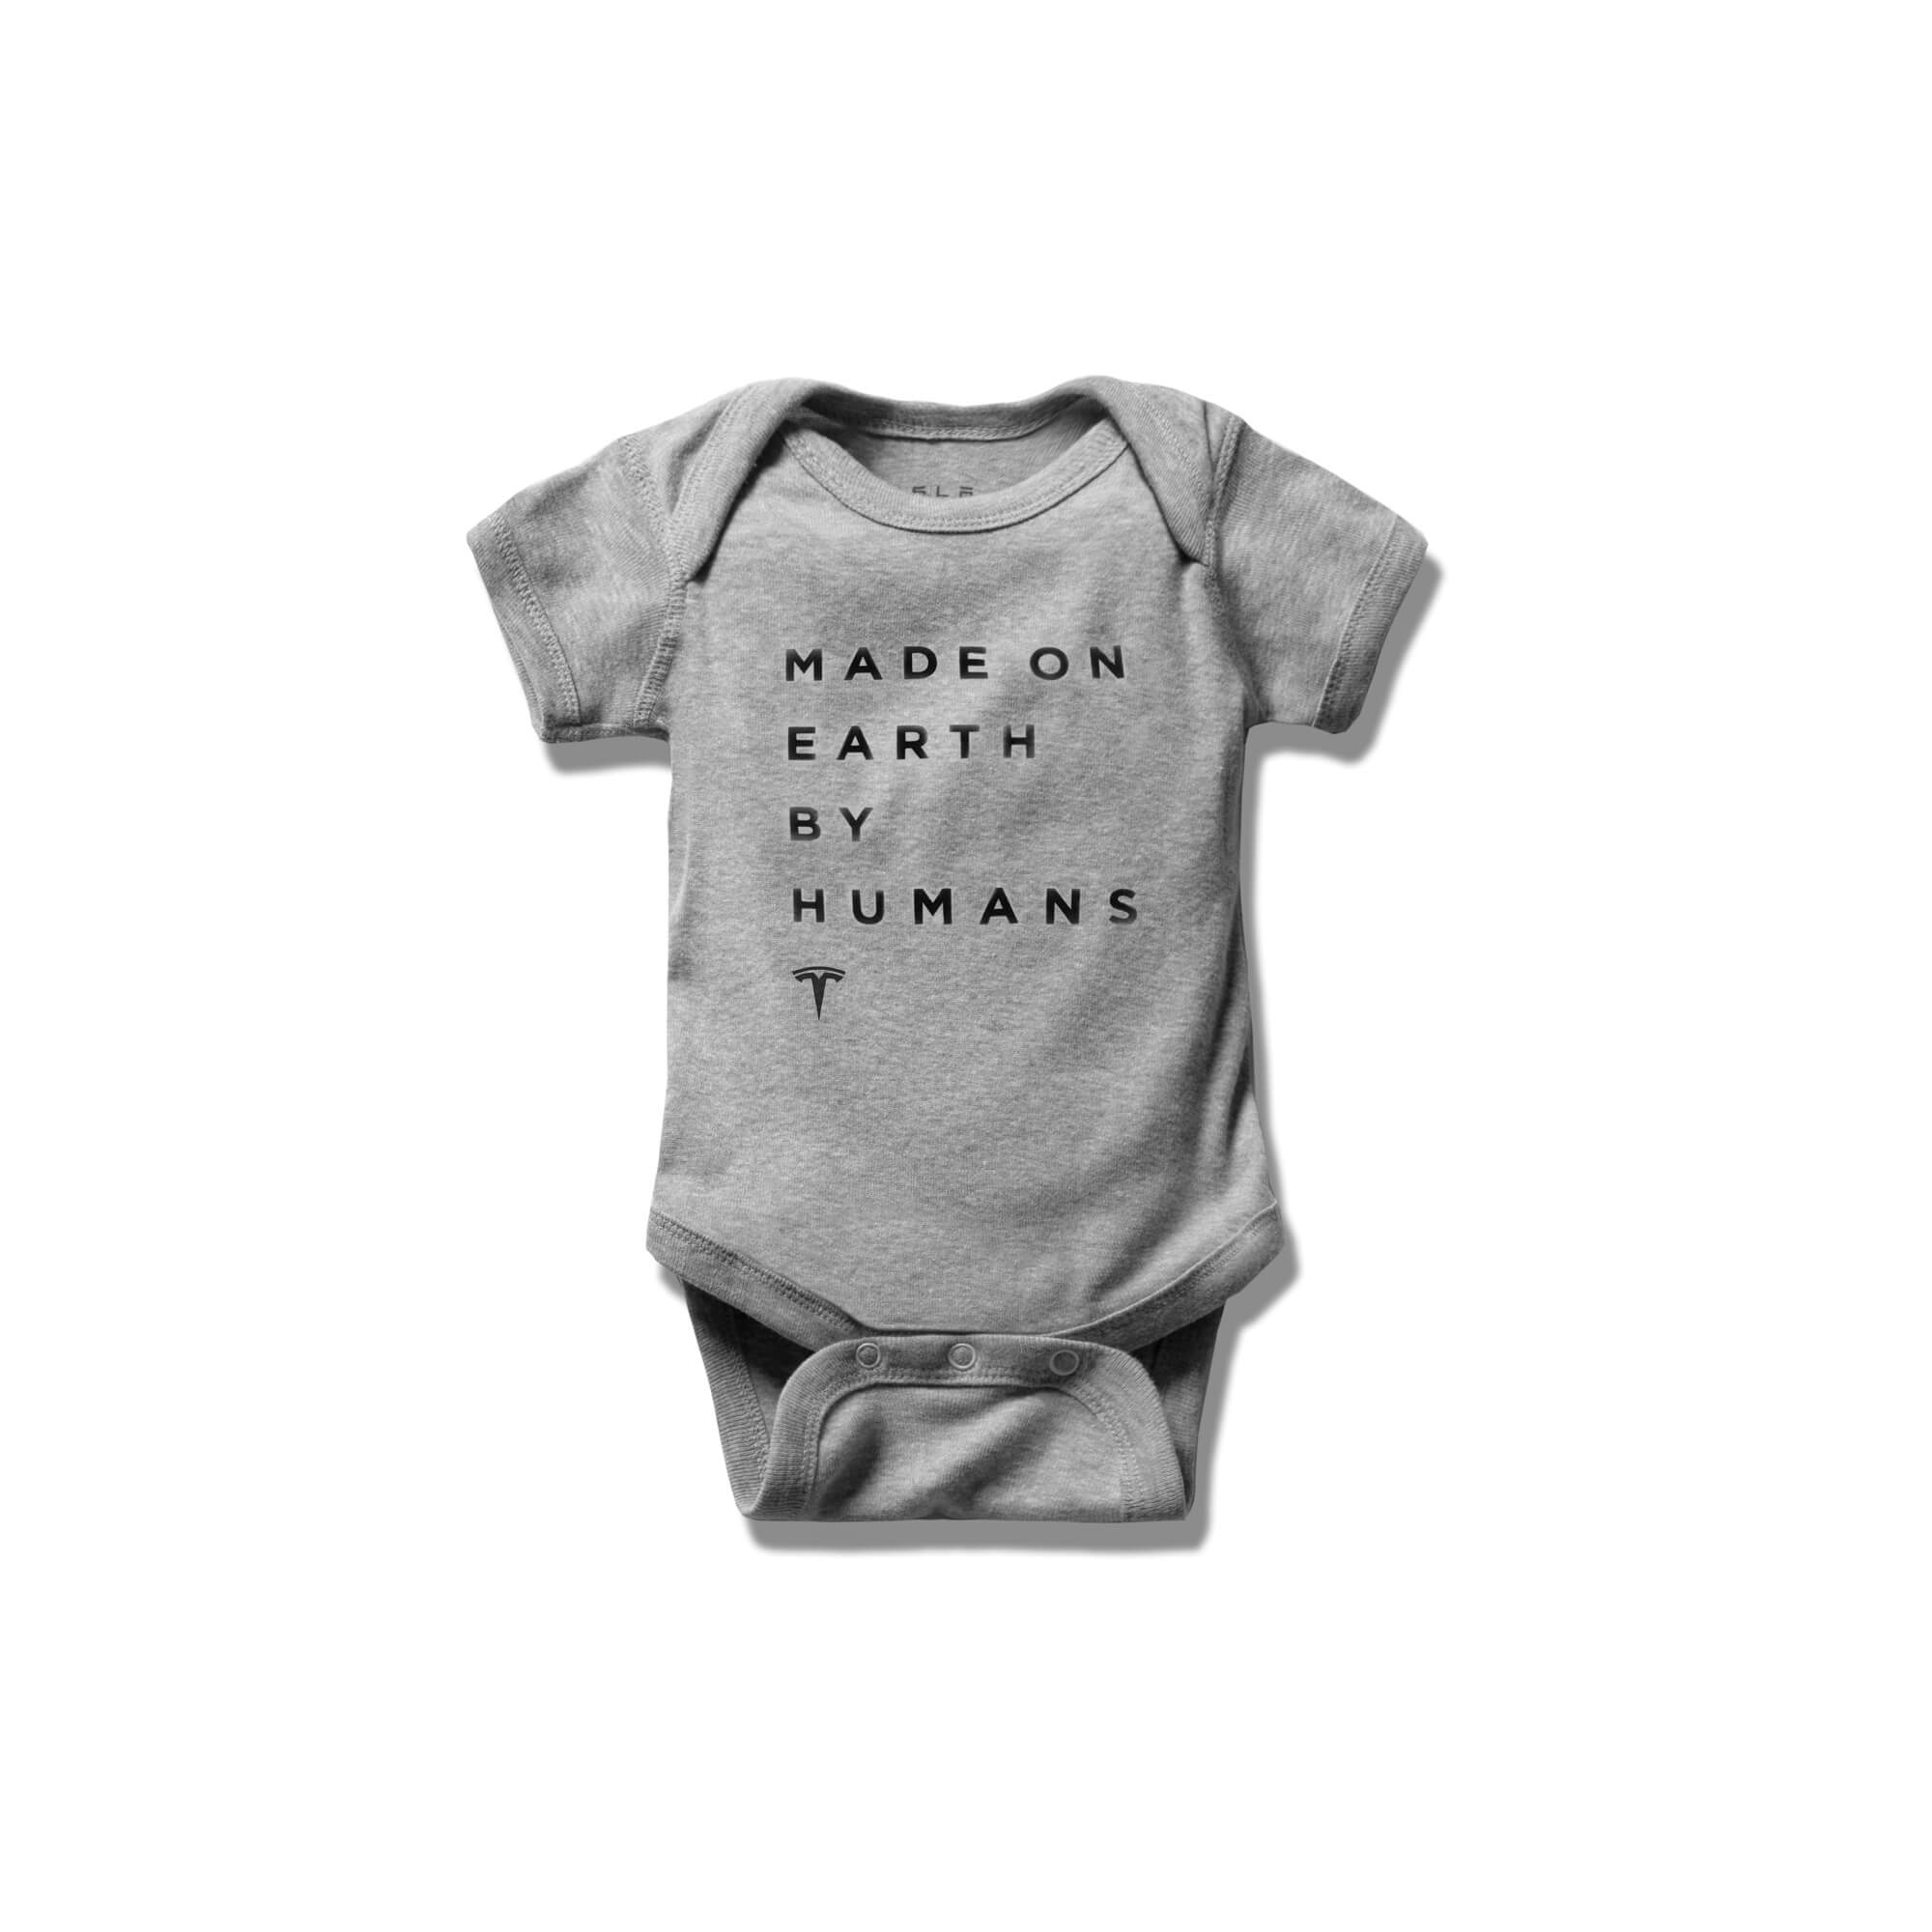 嬰兒 Made on Earth by Humans包臀衣